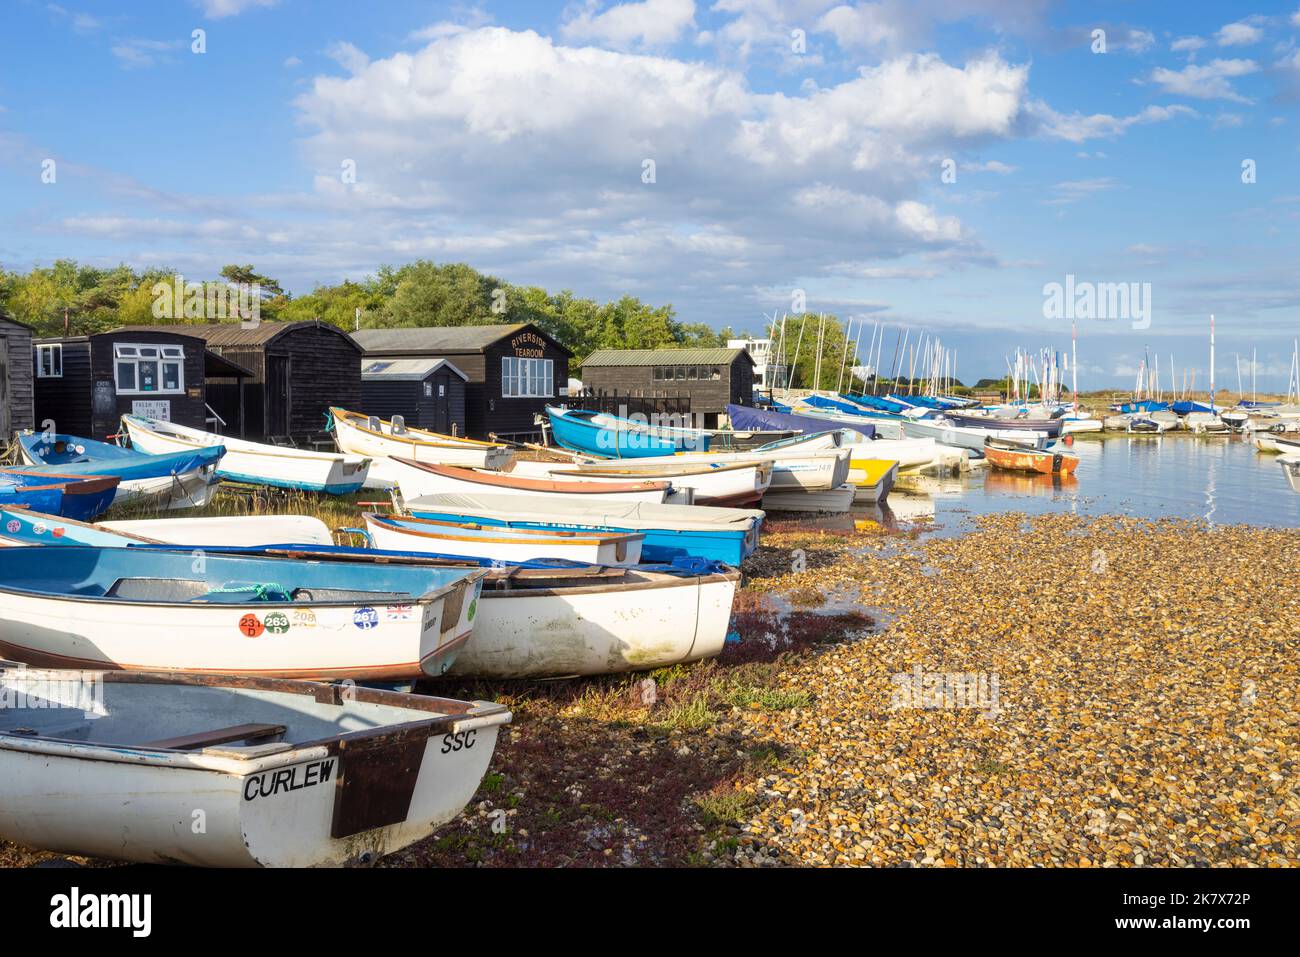 Des bateaux amarrés devant les cabanes de pêcheurs et le salon de la rivière Riverside sur la plage de galets de la rivière ADLE à Orford Suffolk Angleterre Royaume-Uni Europe Banque D'Images